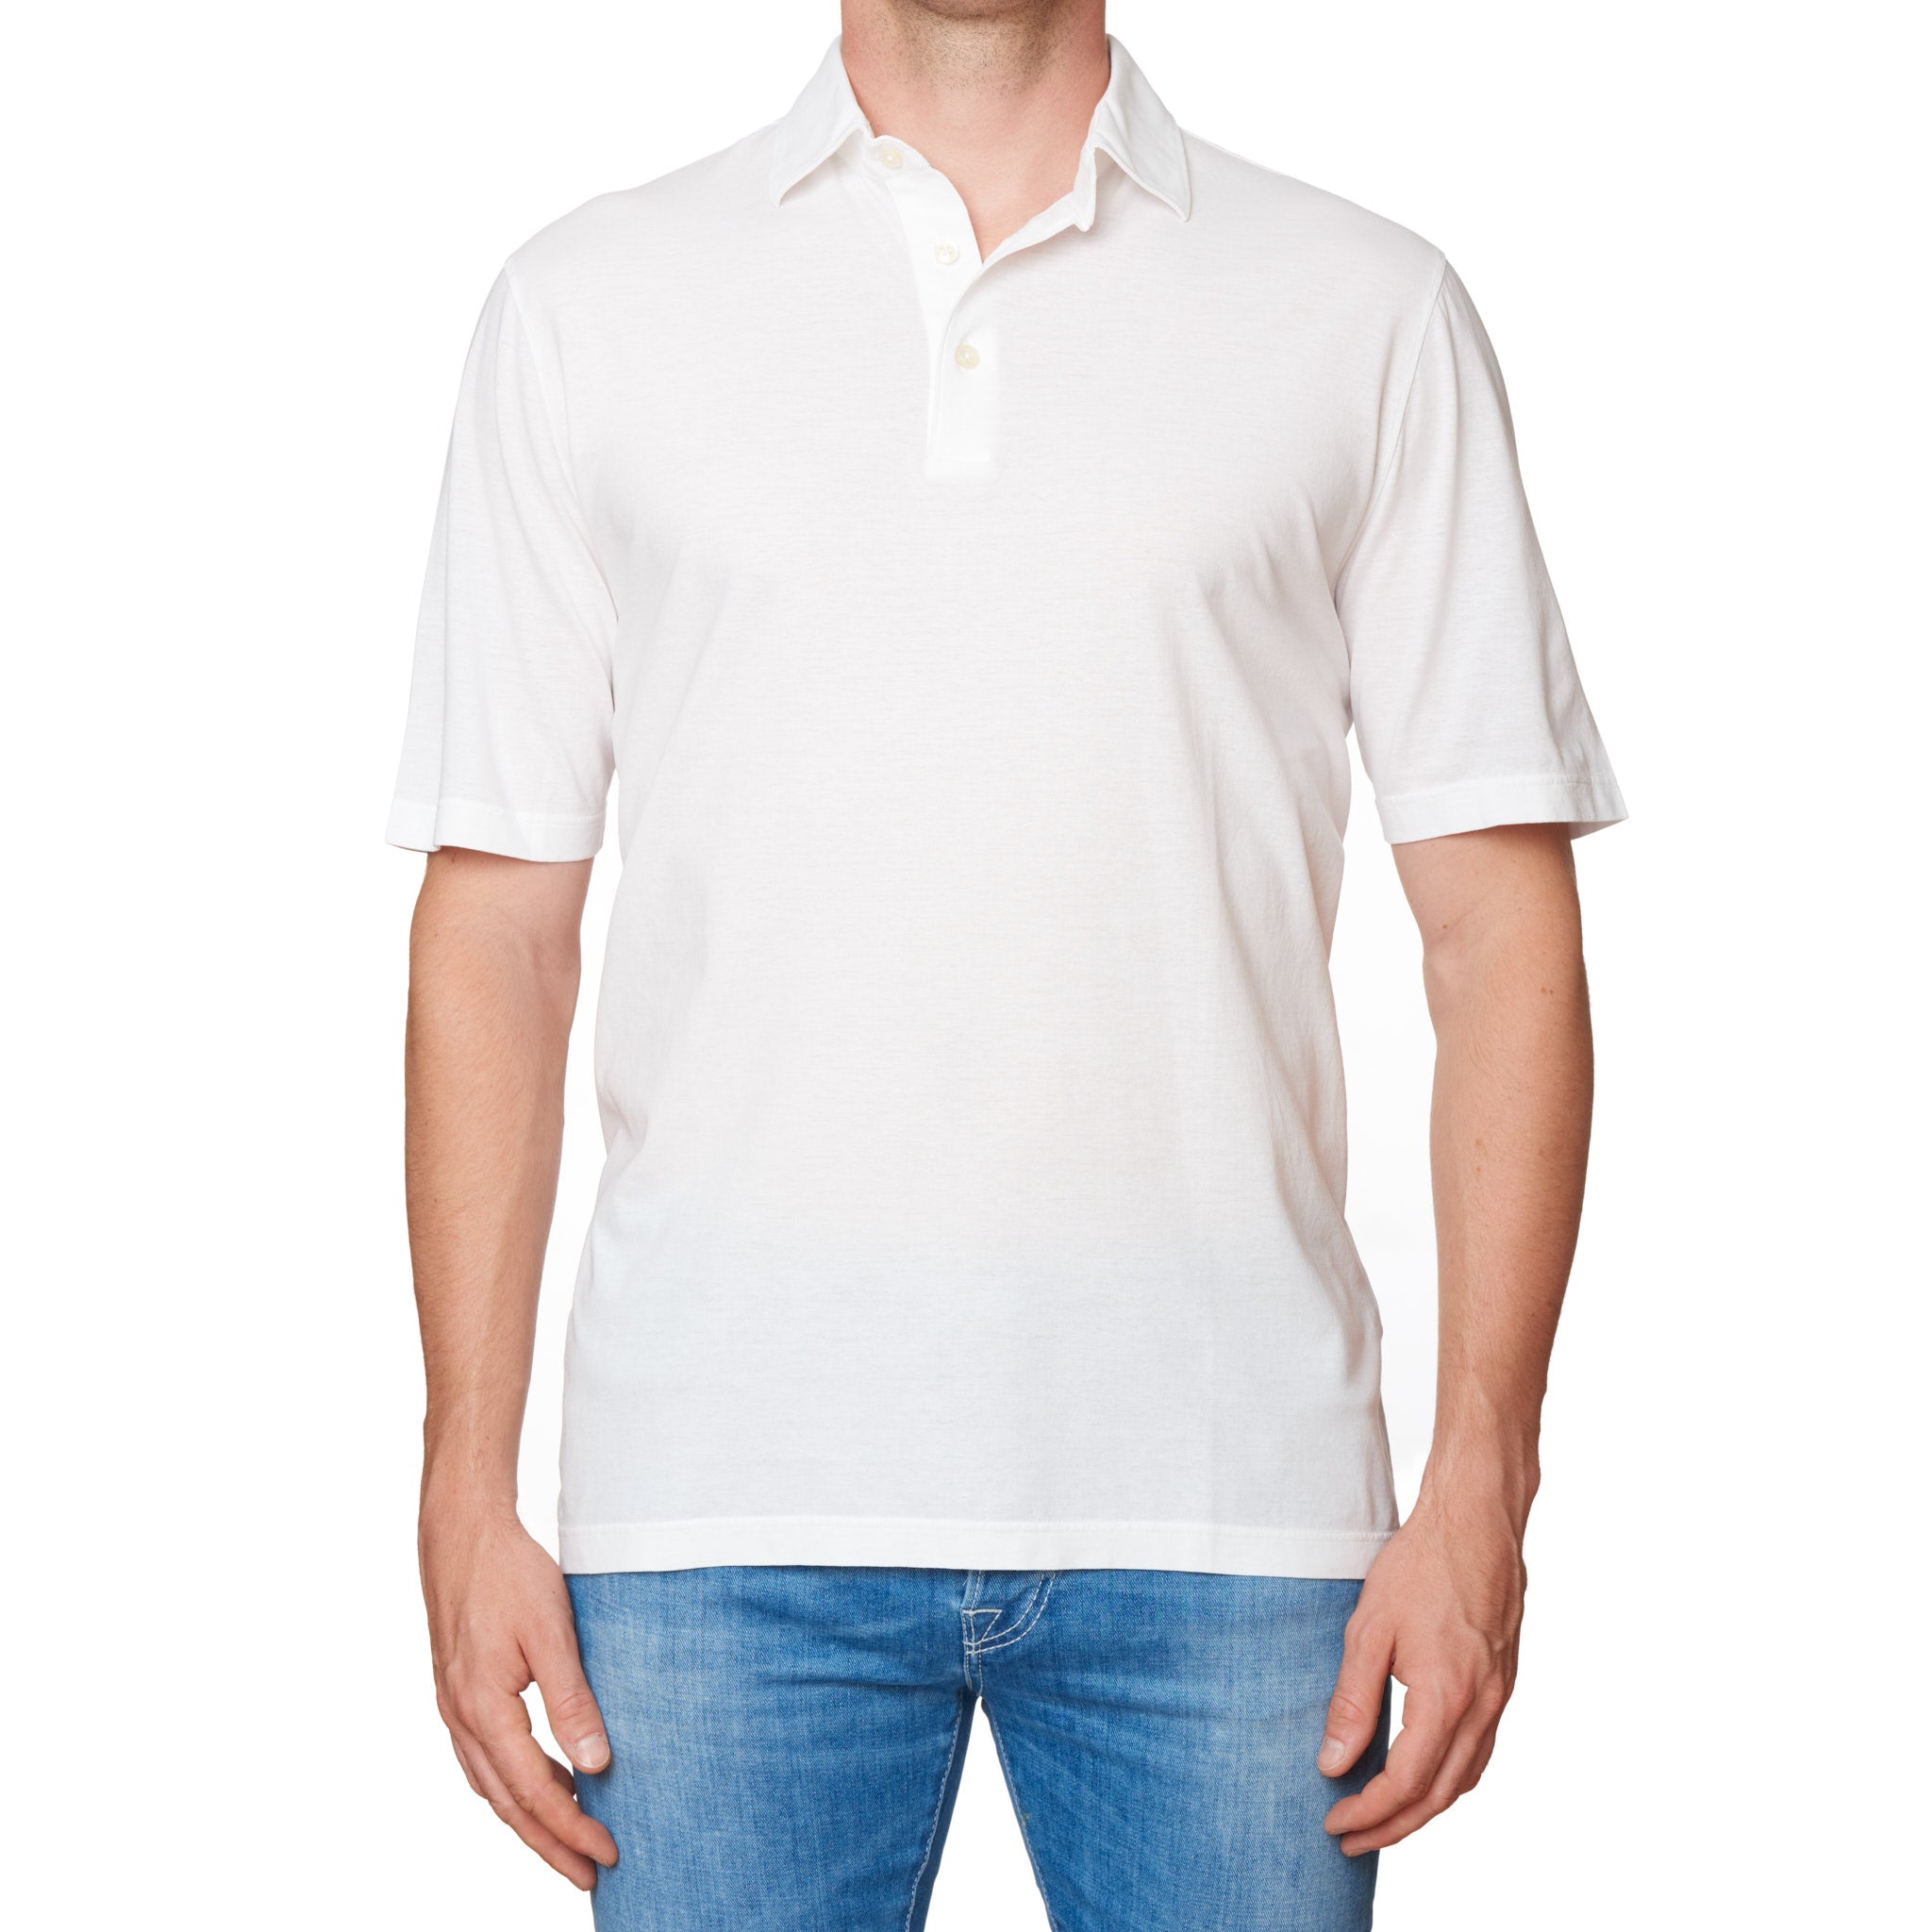 Kiton KIRED "Positano" White Exclusive Crepe Cotton Short Sleeve Polo Shirt XS KIRED